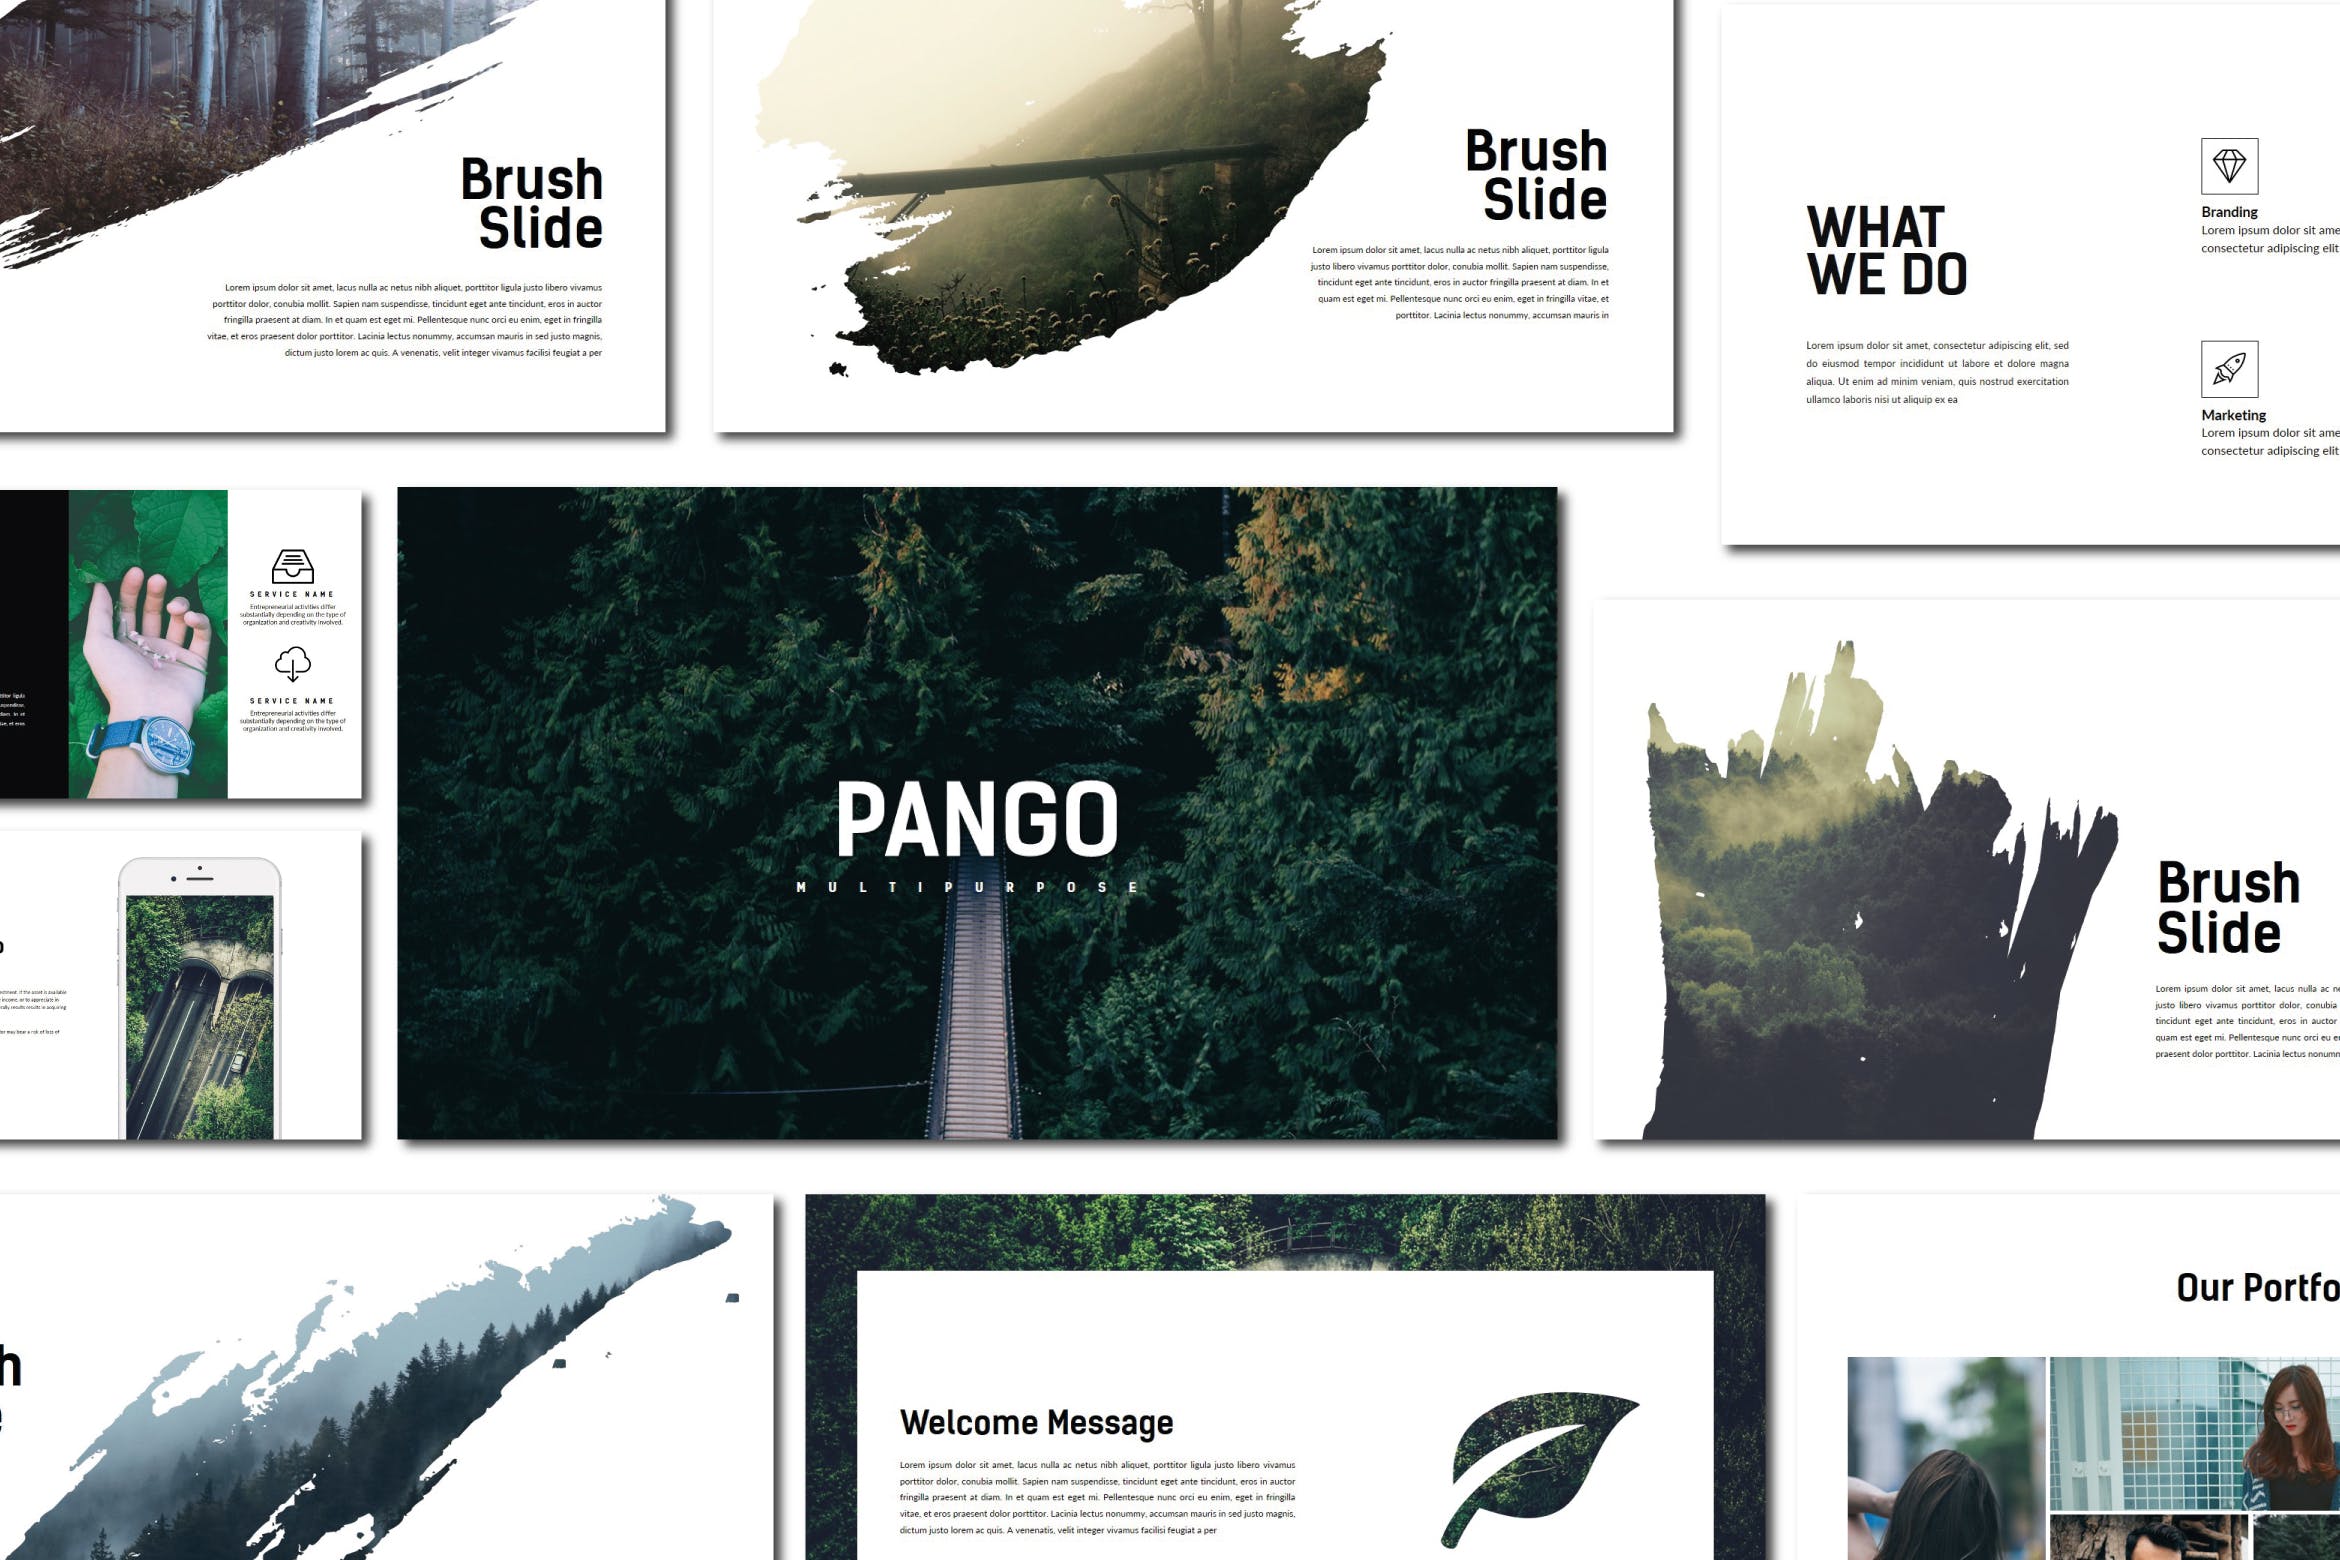 创意摄影/设计/策划工作室素材库精选PPT模板 Pango | Powerpoint Template插图